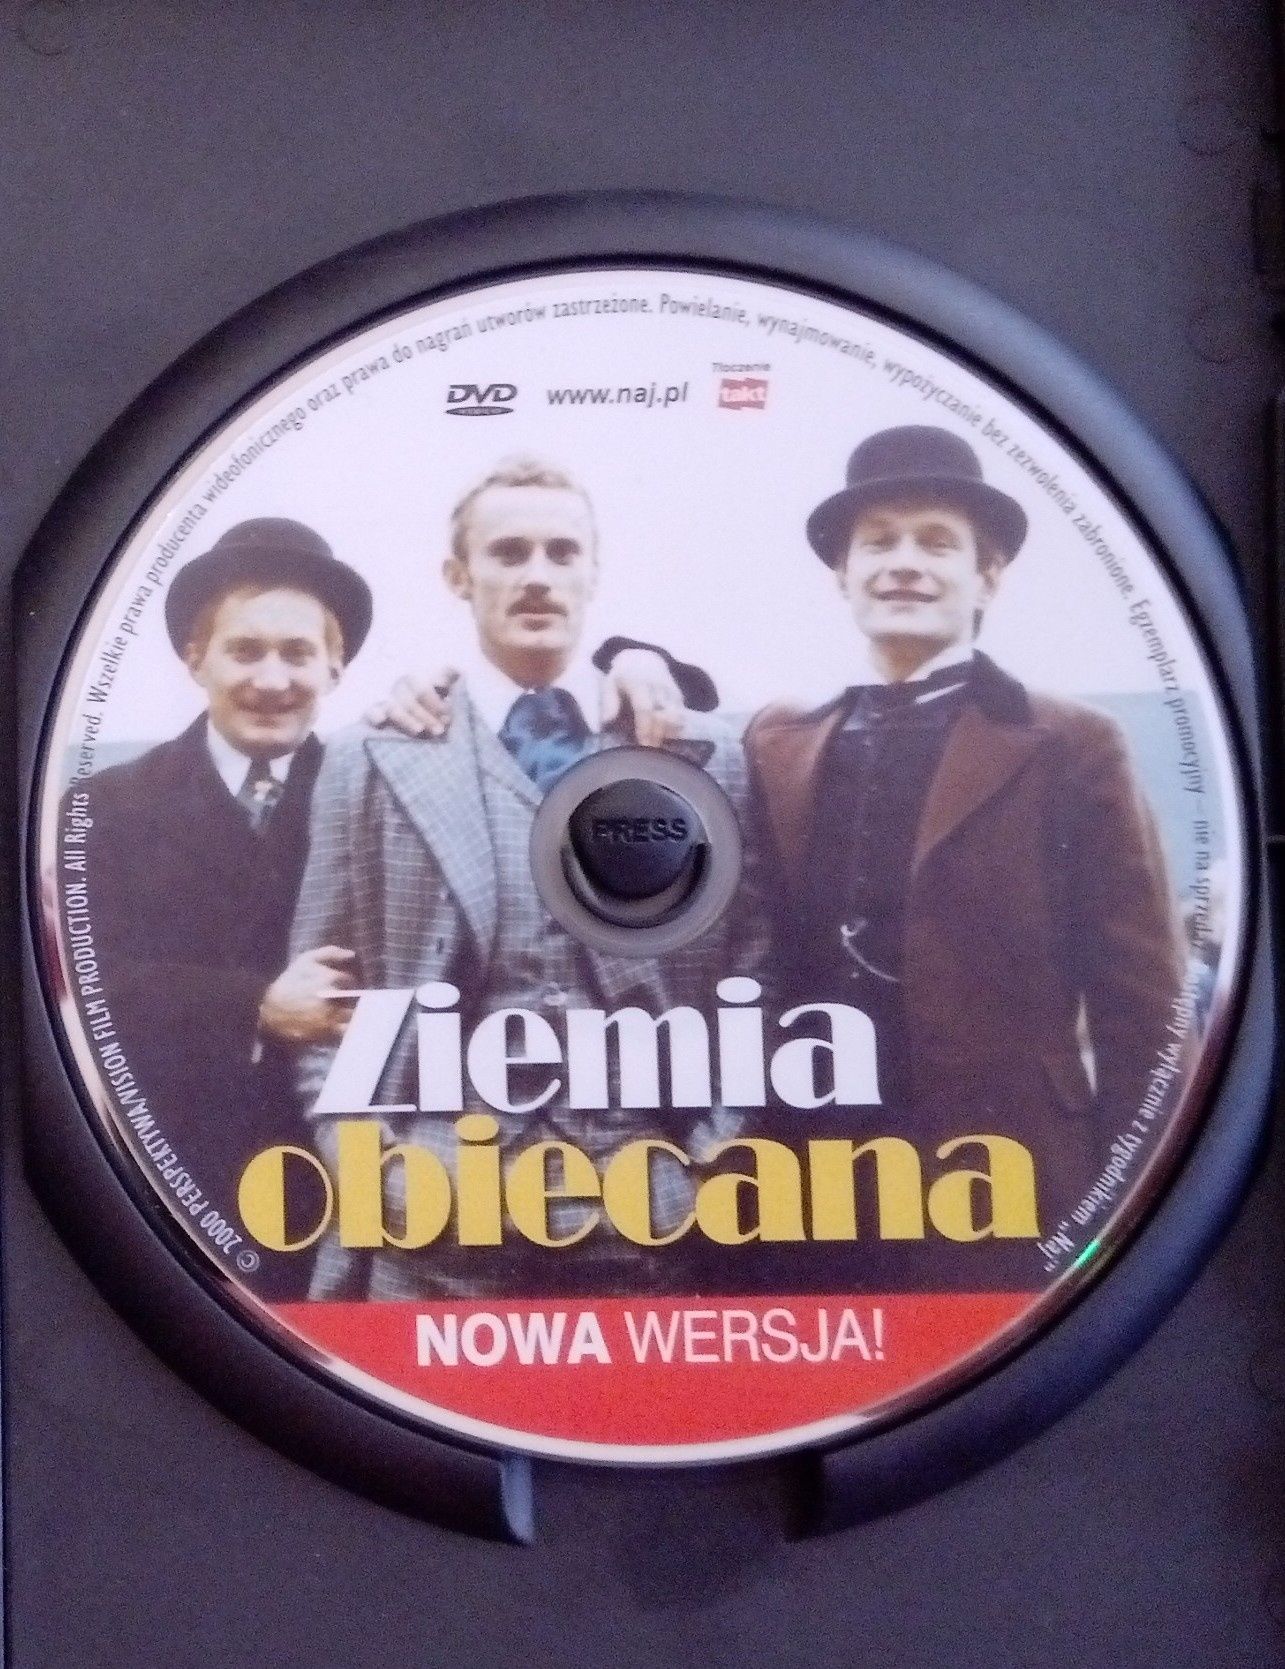 Ziemia obiecana DVD Wajda Olbrychski